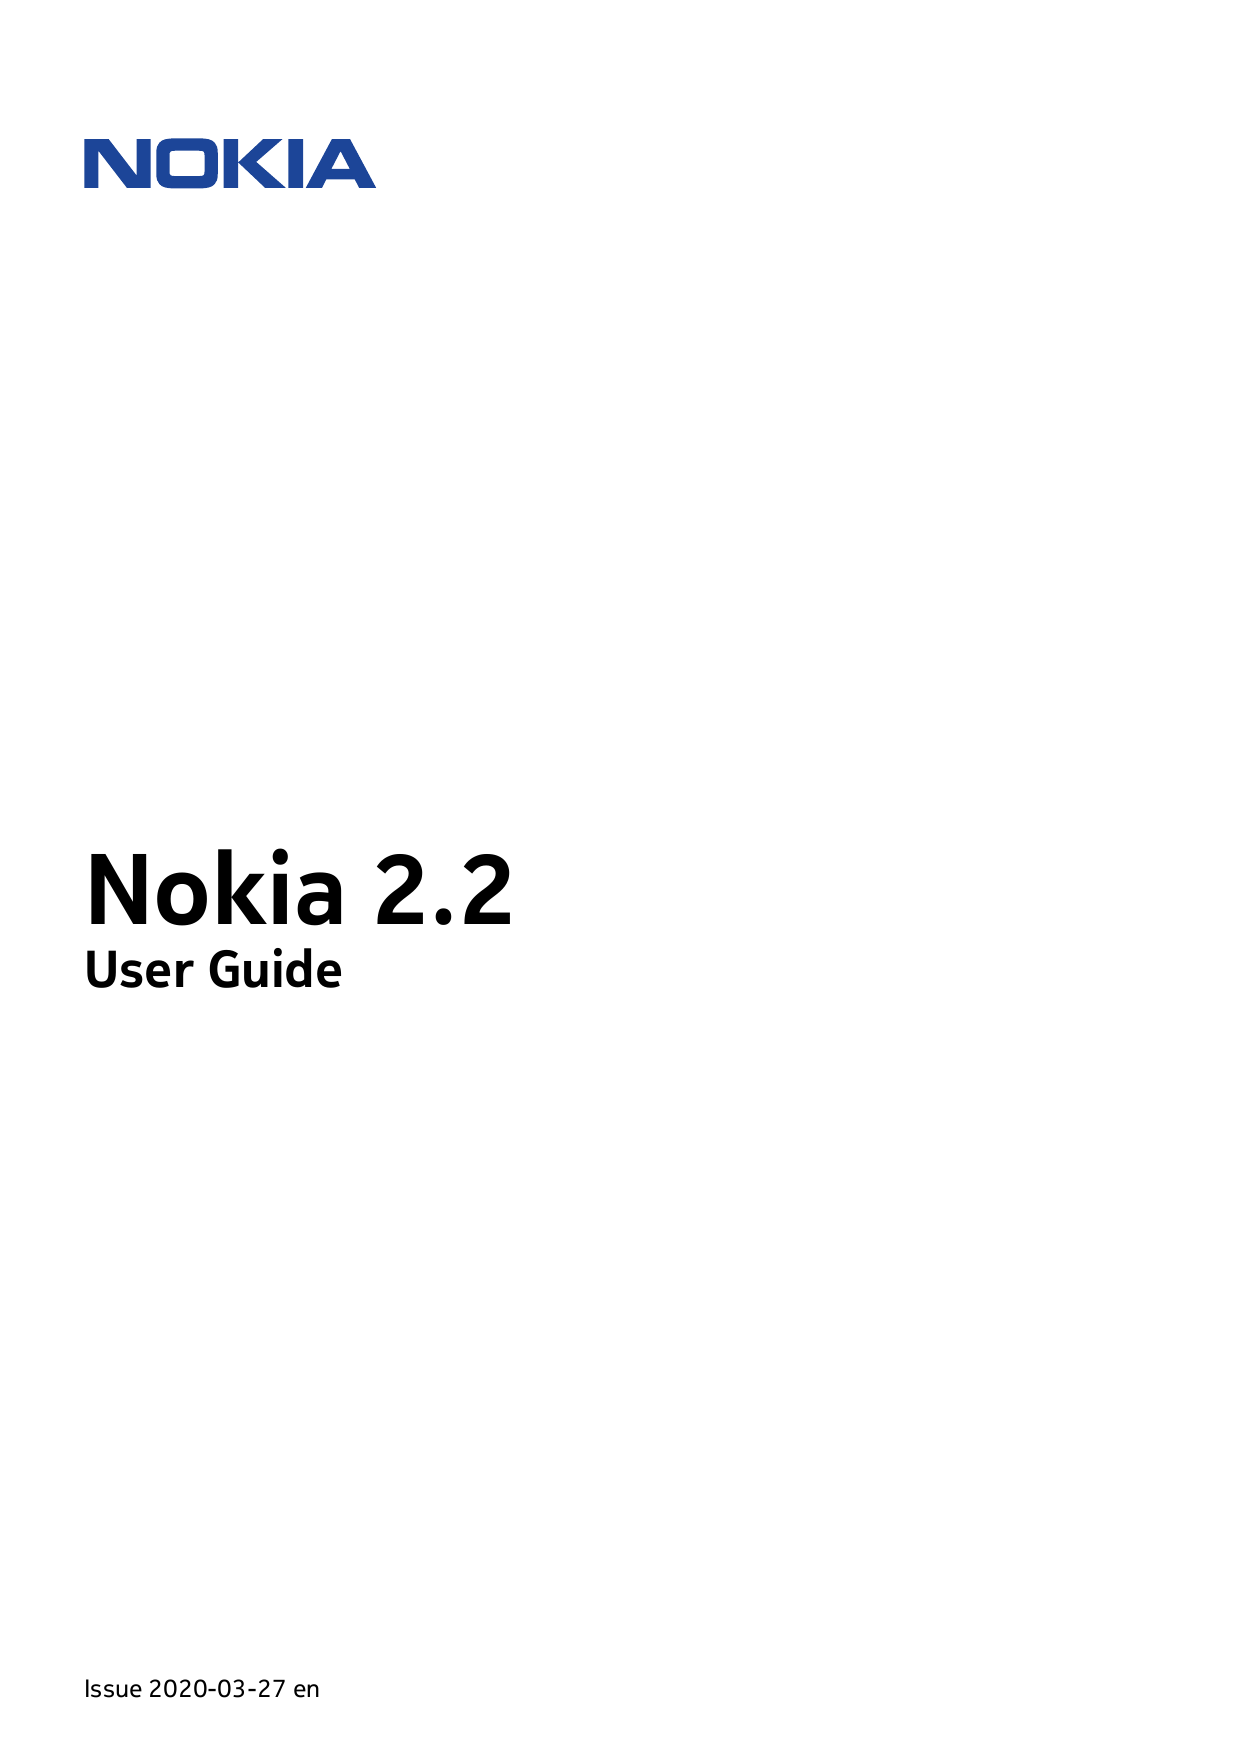 Nokia 2.2User GuideIssue 2020-03-27 en